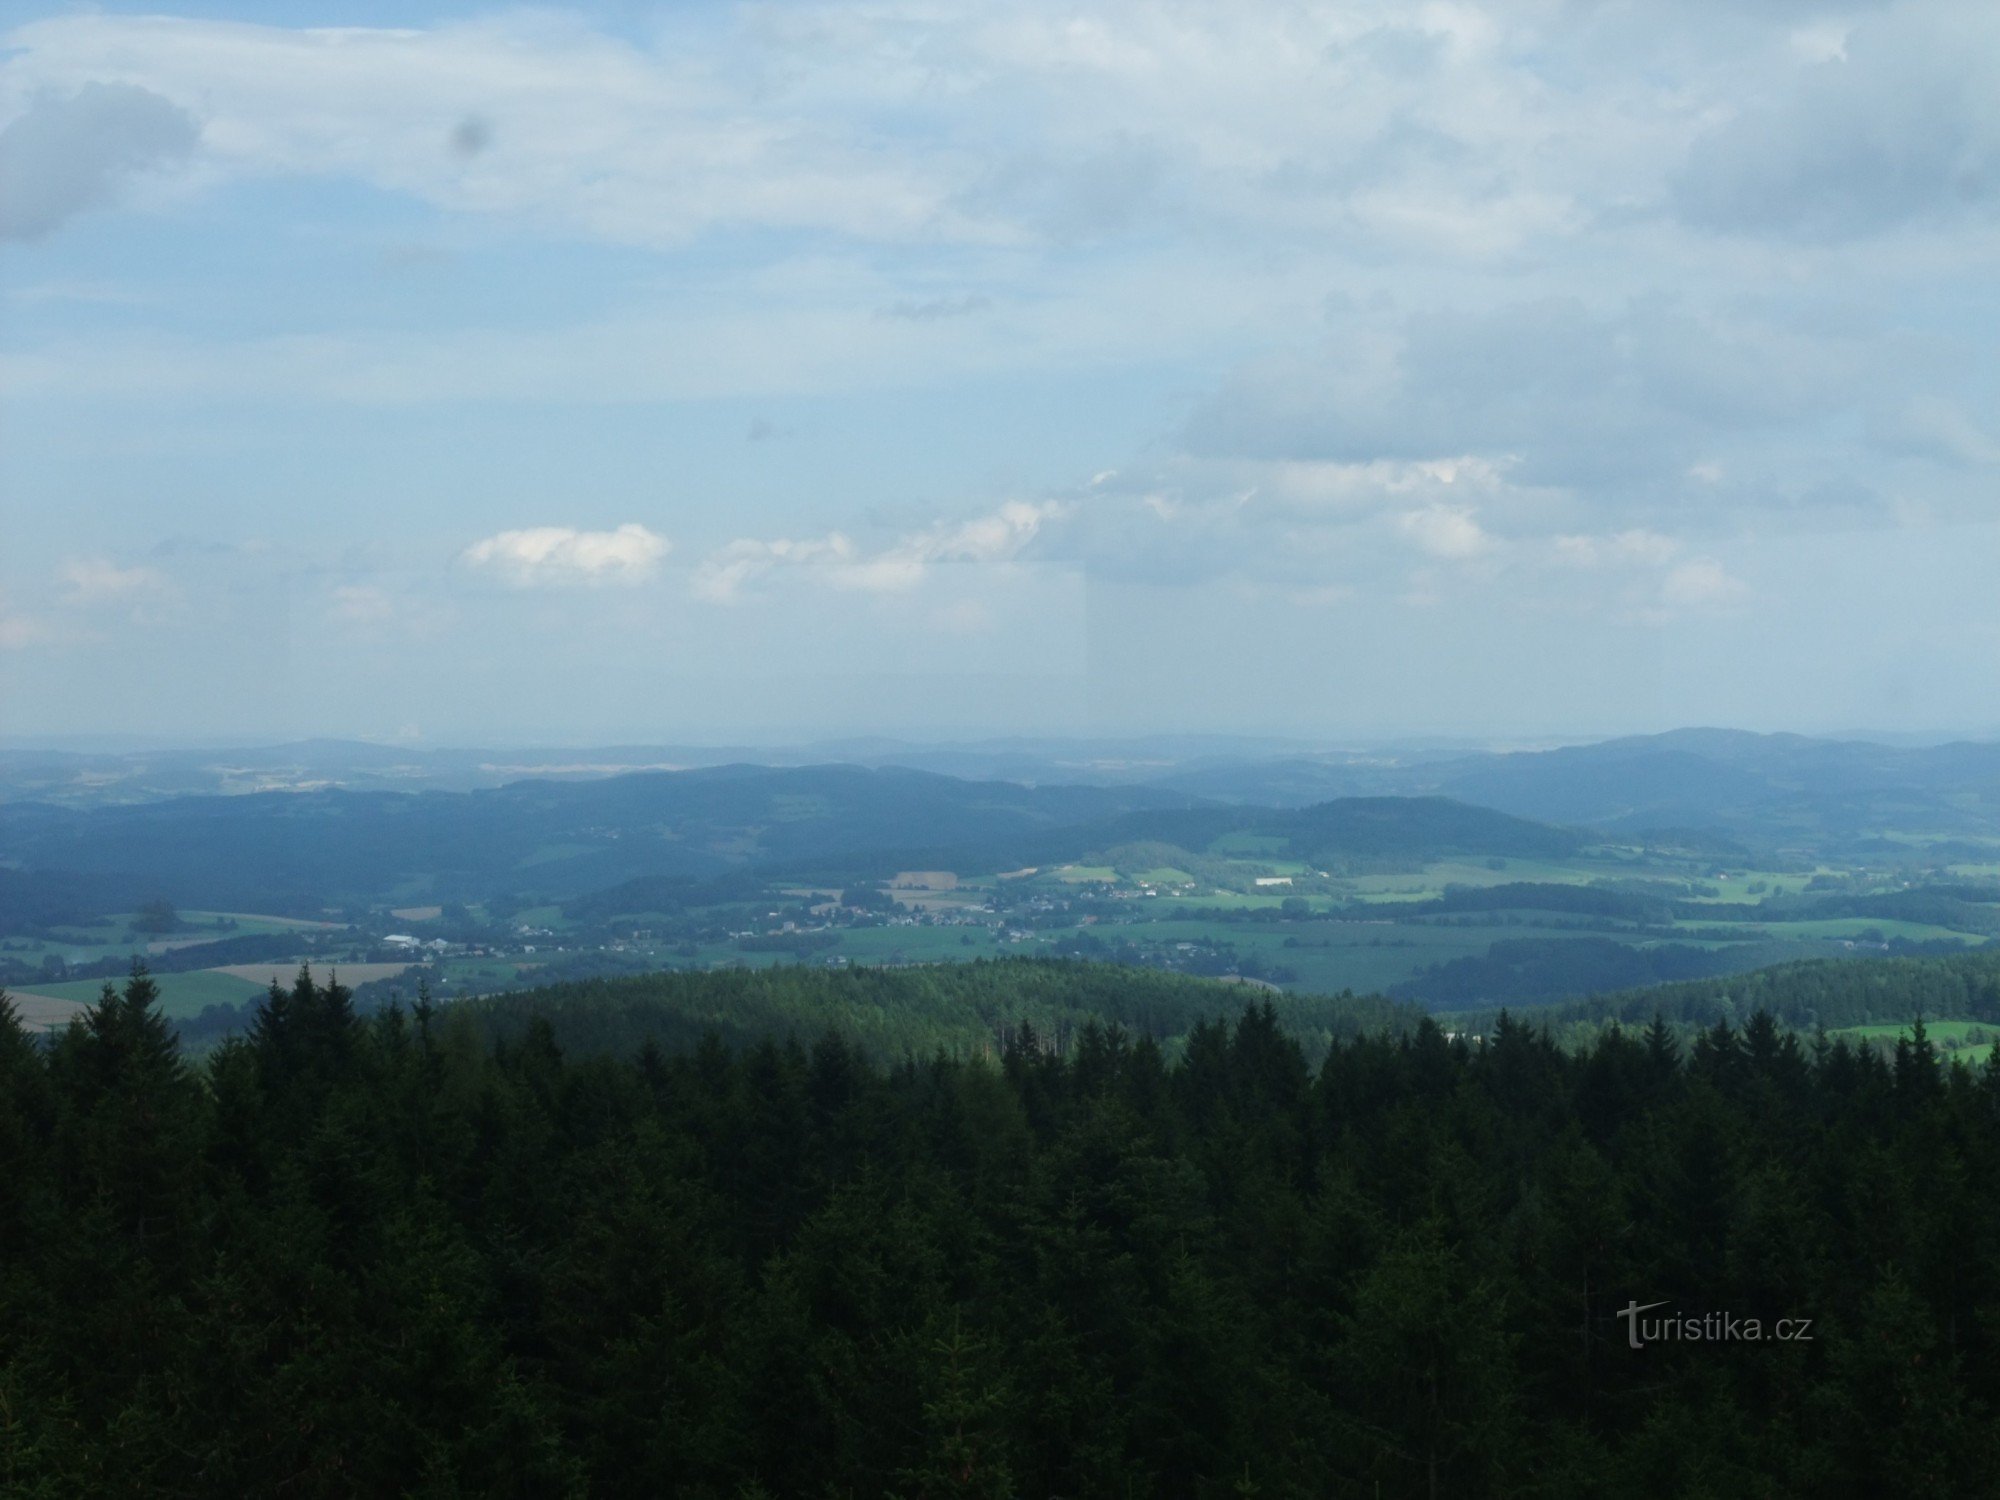 La vue depuis la tour d'observation de Klosterman